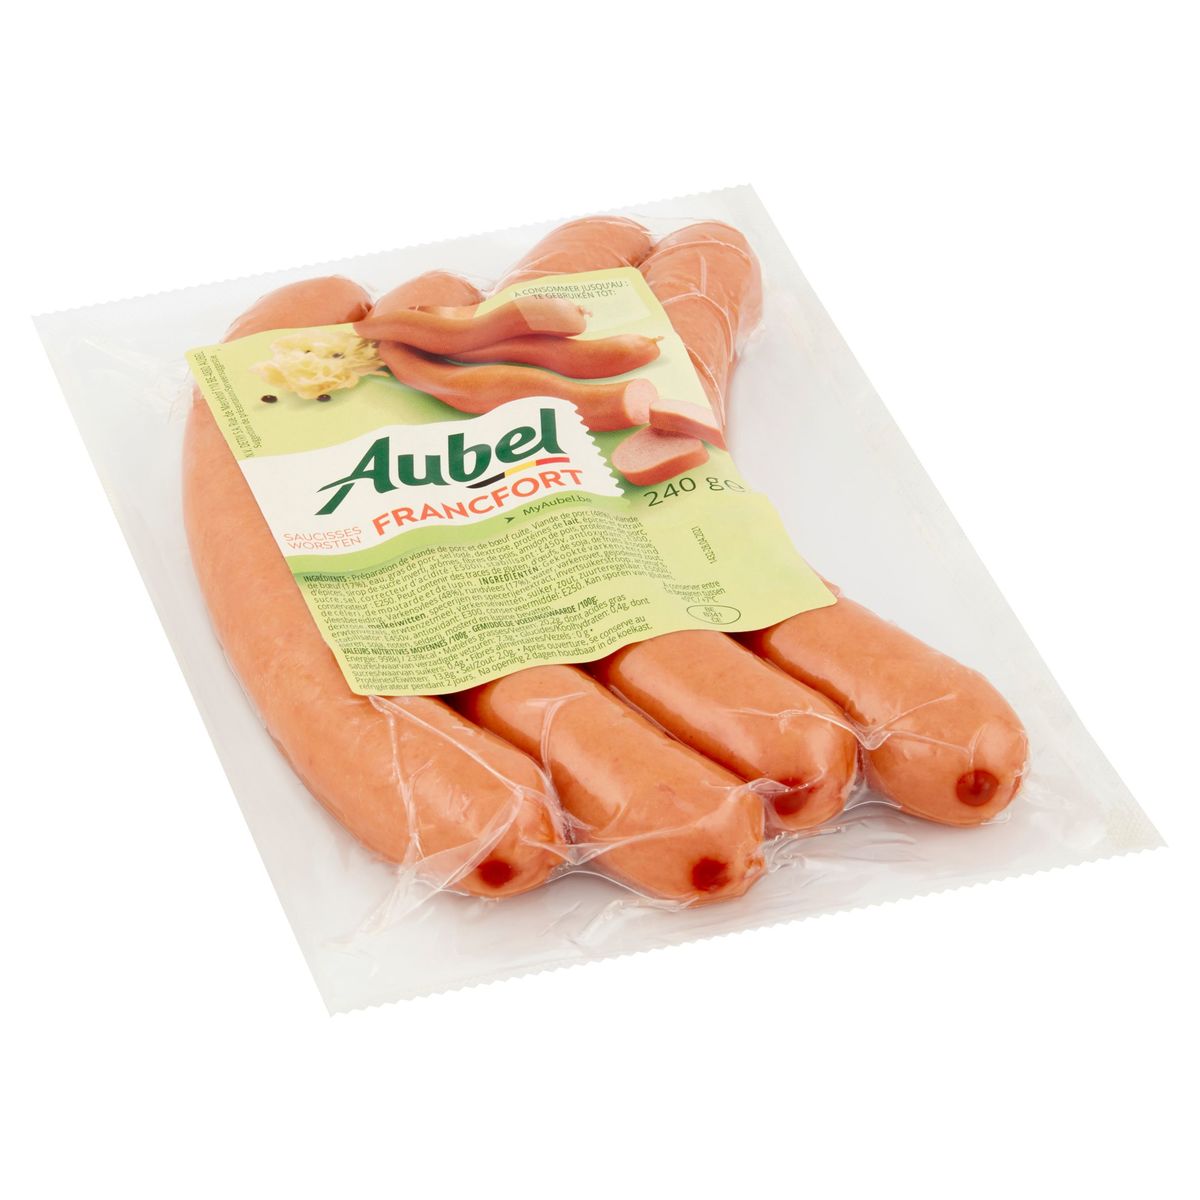 Aubel Saucisses Francfort 240 g